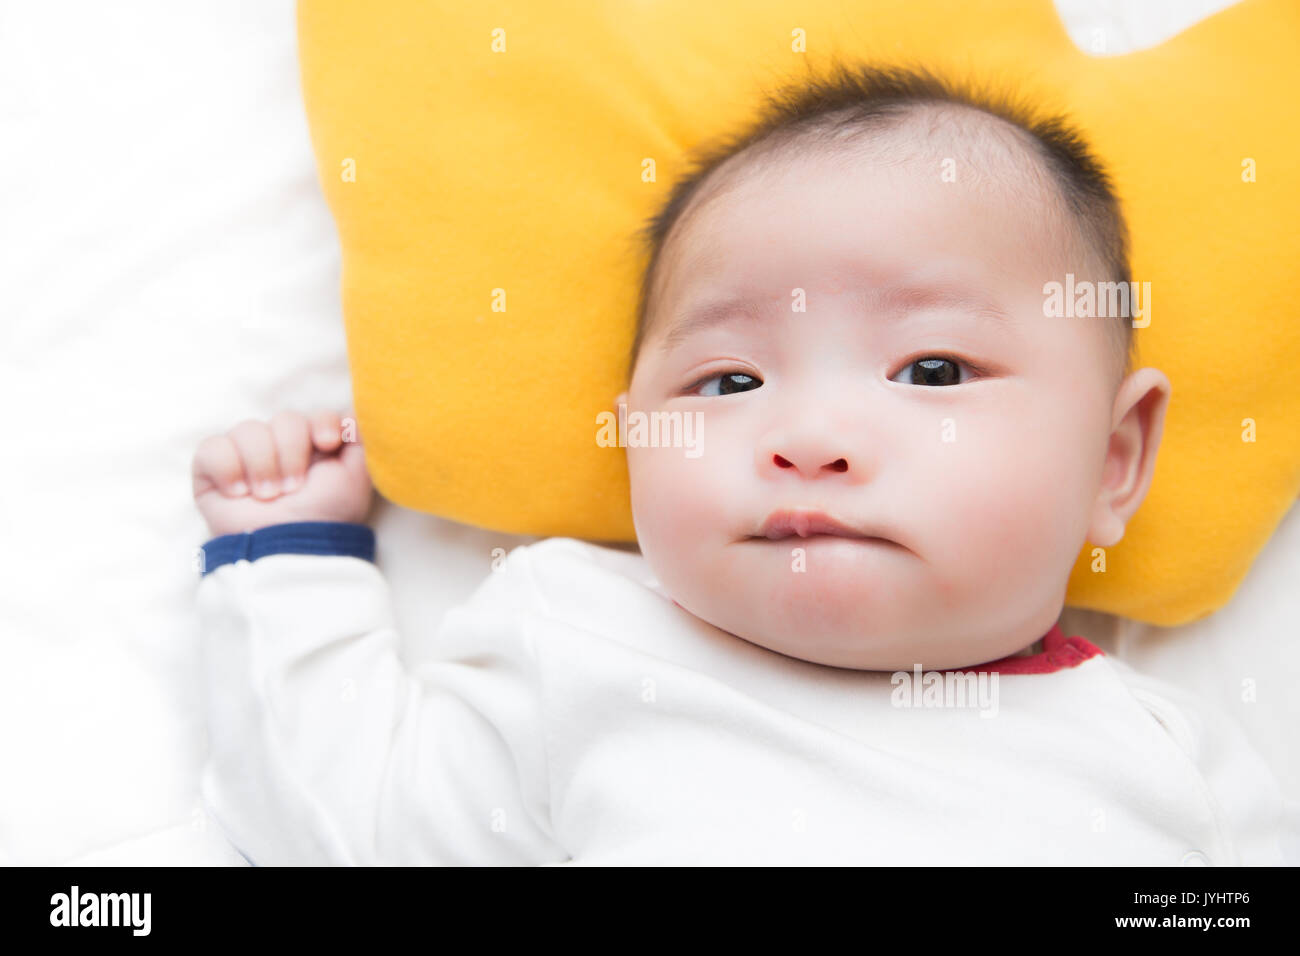 Bébé garçon asiatique look avec demande Banque D'Images